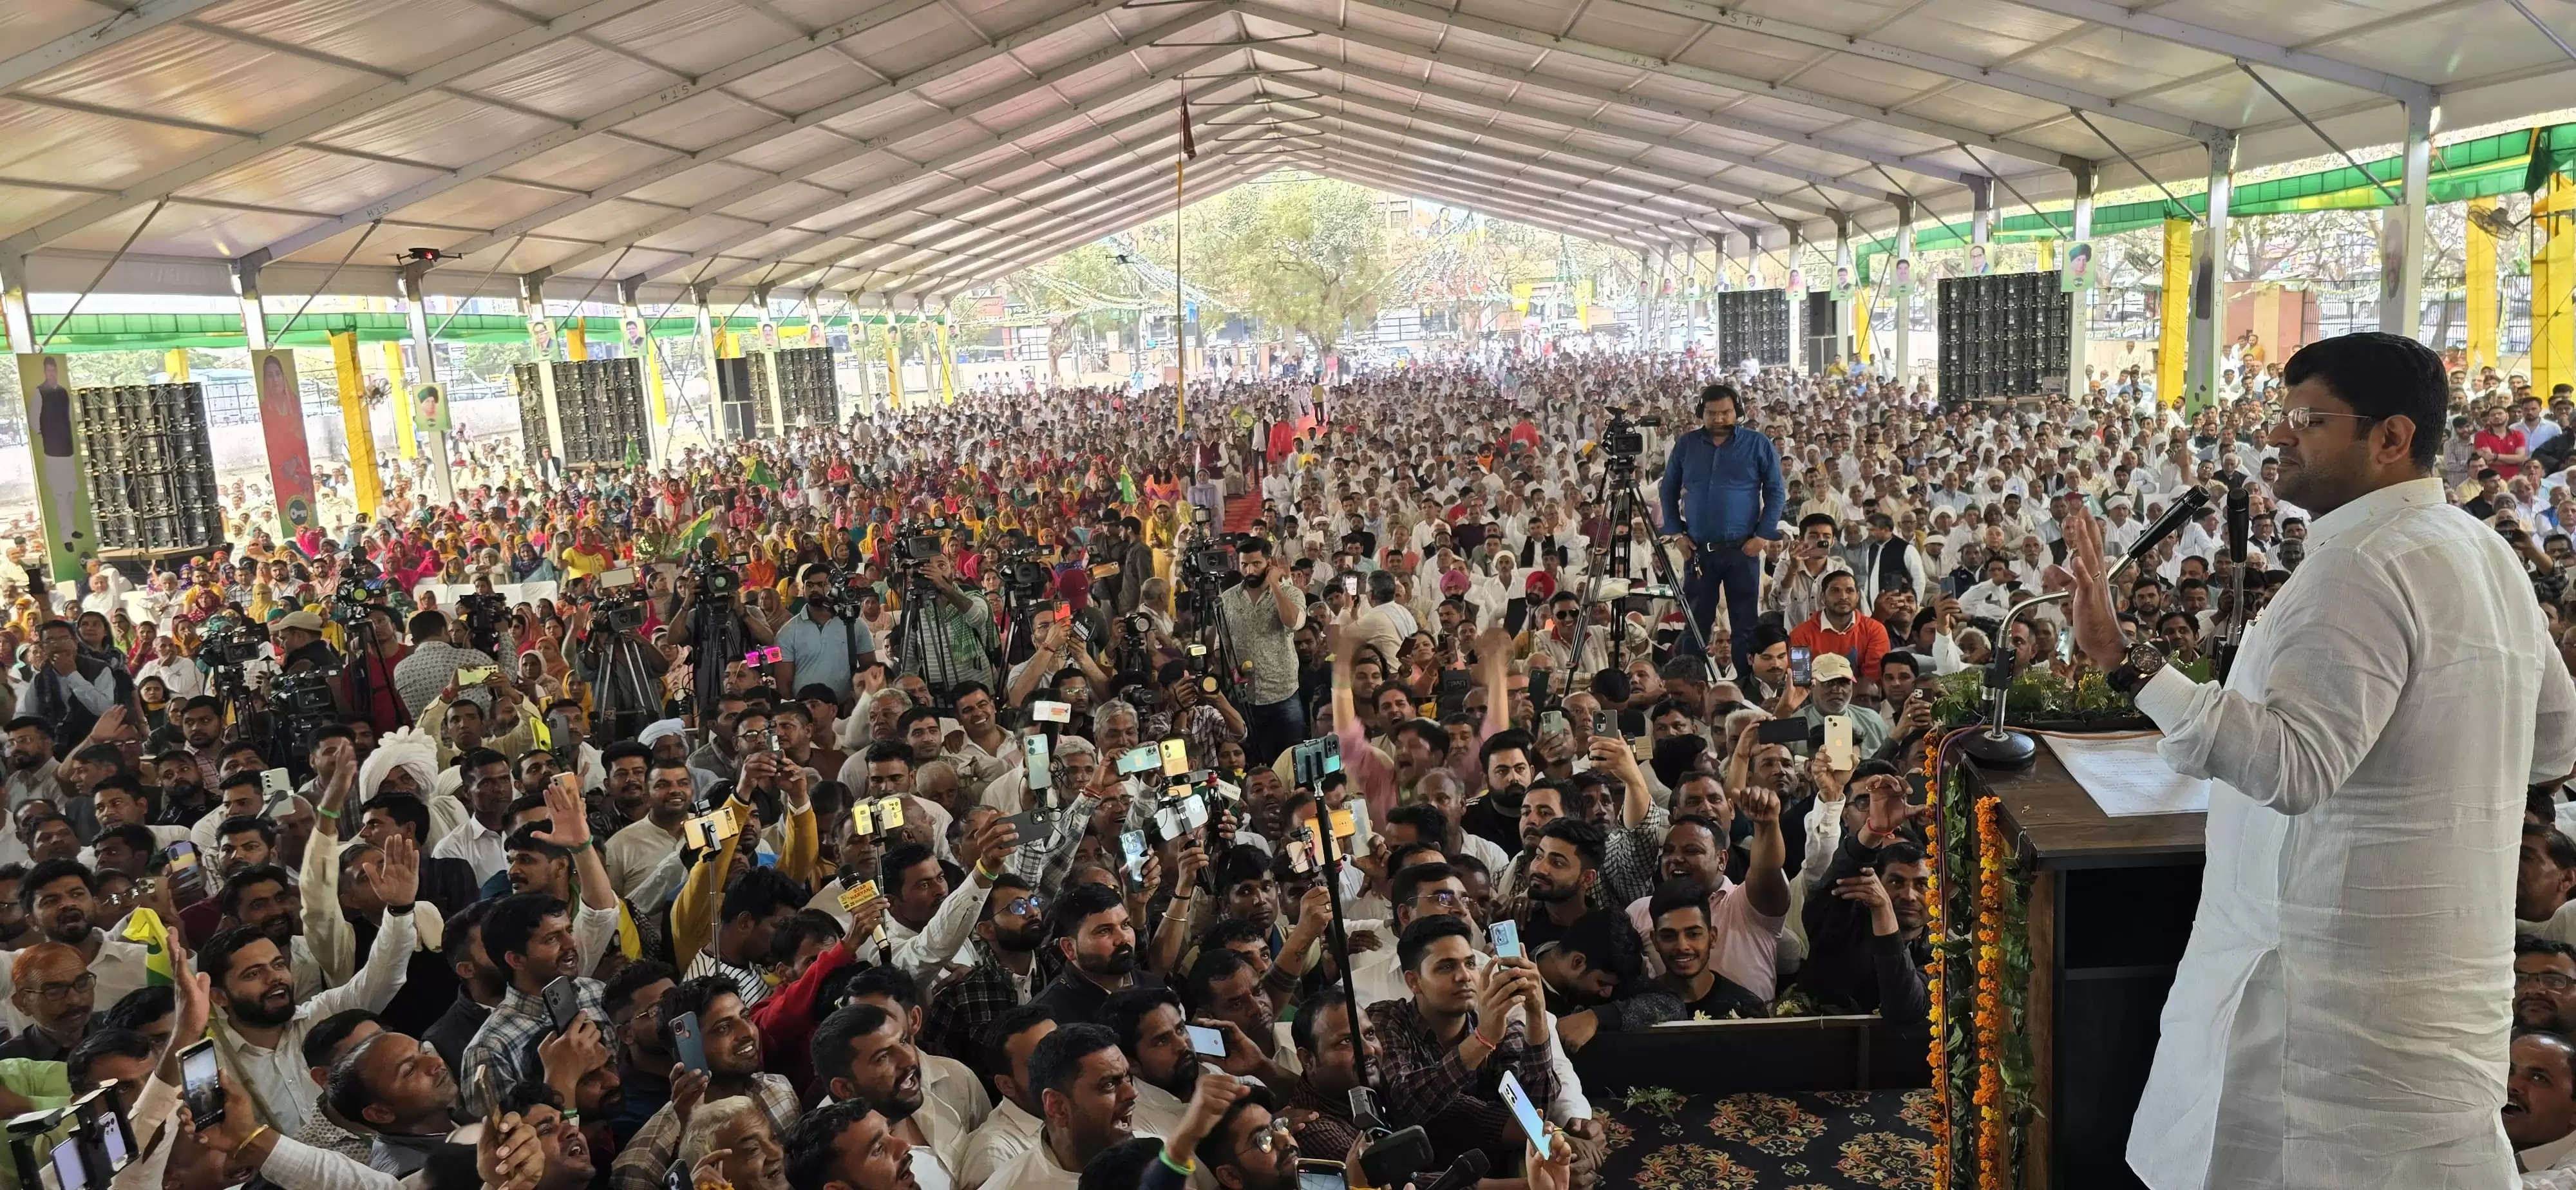 Haryana Dushyant Chautala Speech: हरियाणा के पूर्व डिप्टी सीएम दुष्यंत चौटाला का हिसार में नव संकल्प रैली में संबोधन लाइव चल रहा है। दुष्यंत चौटाला ने कहा कि राजपाट किसी की बापौती नहीं होते, ये जनता की ताकत है।